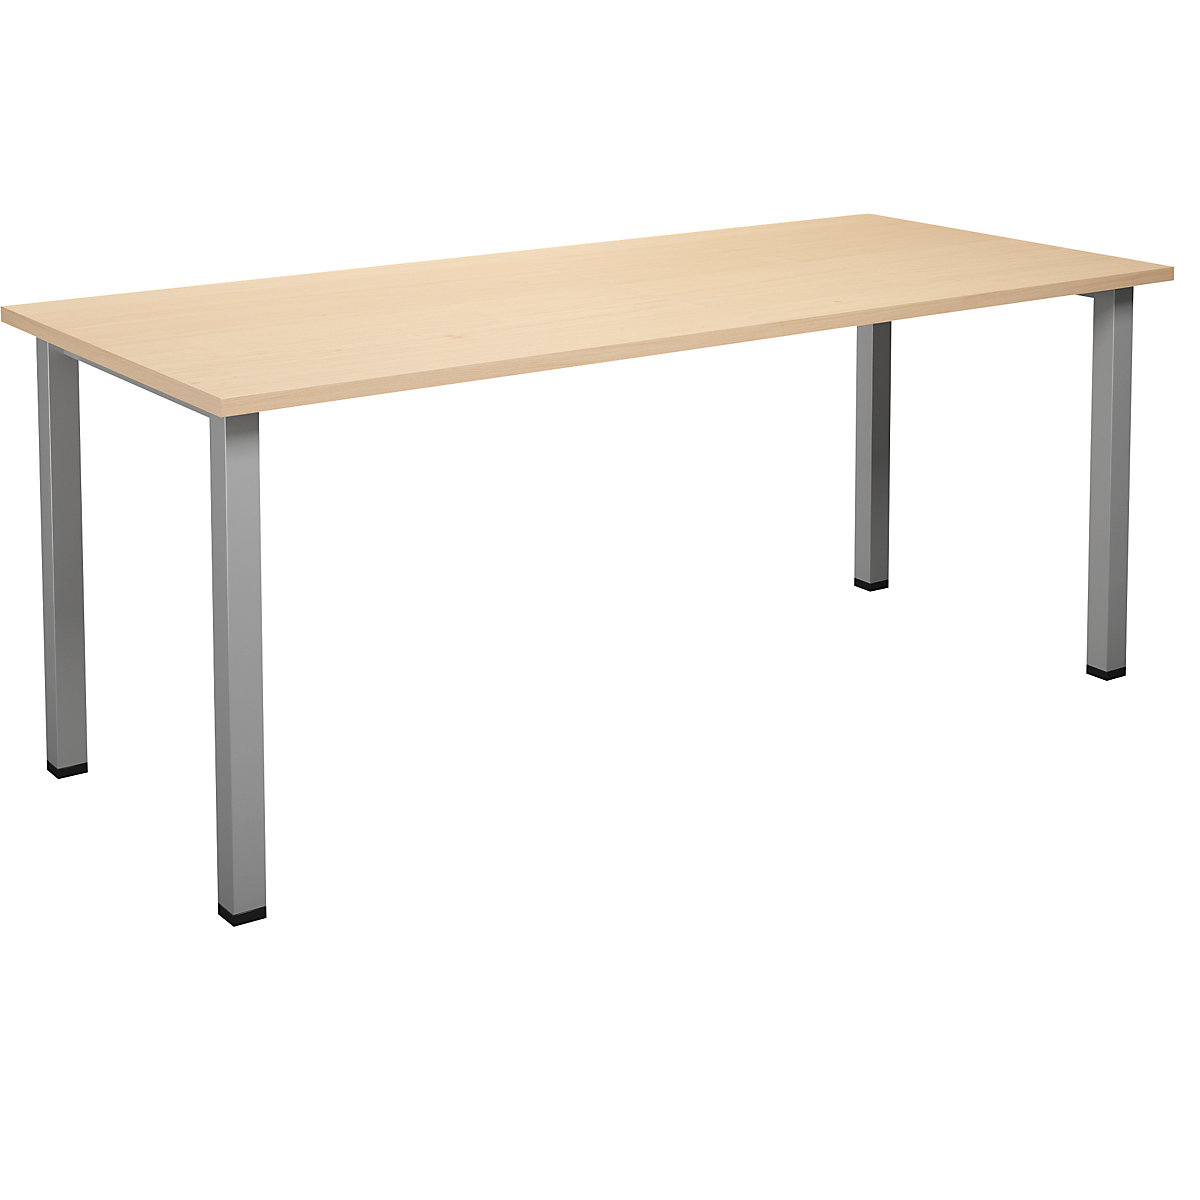 DUO-U multi-purpose desk, straight tabletop, WxD 1800 x 800 mm, birch, silver-15